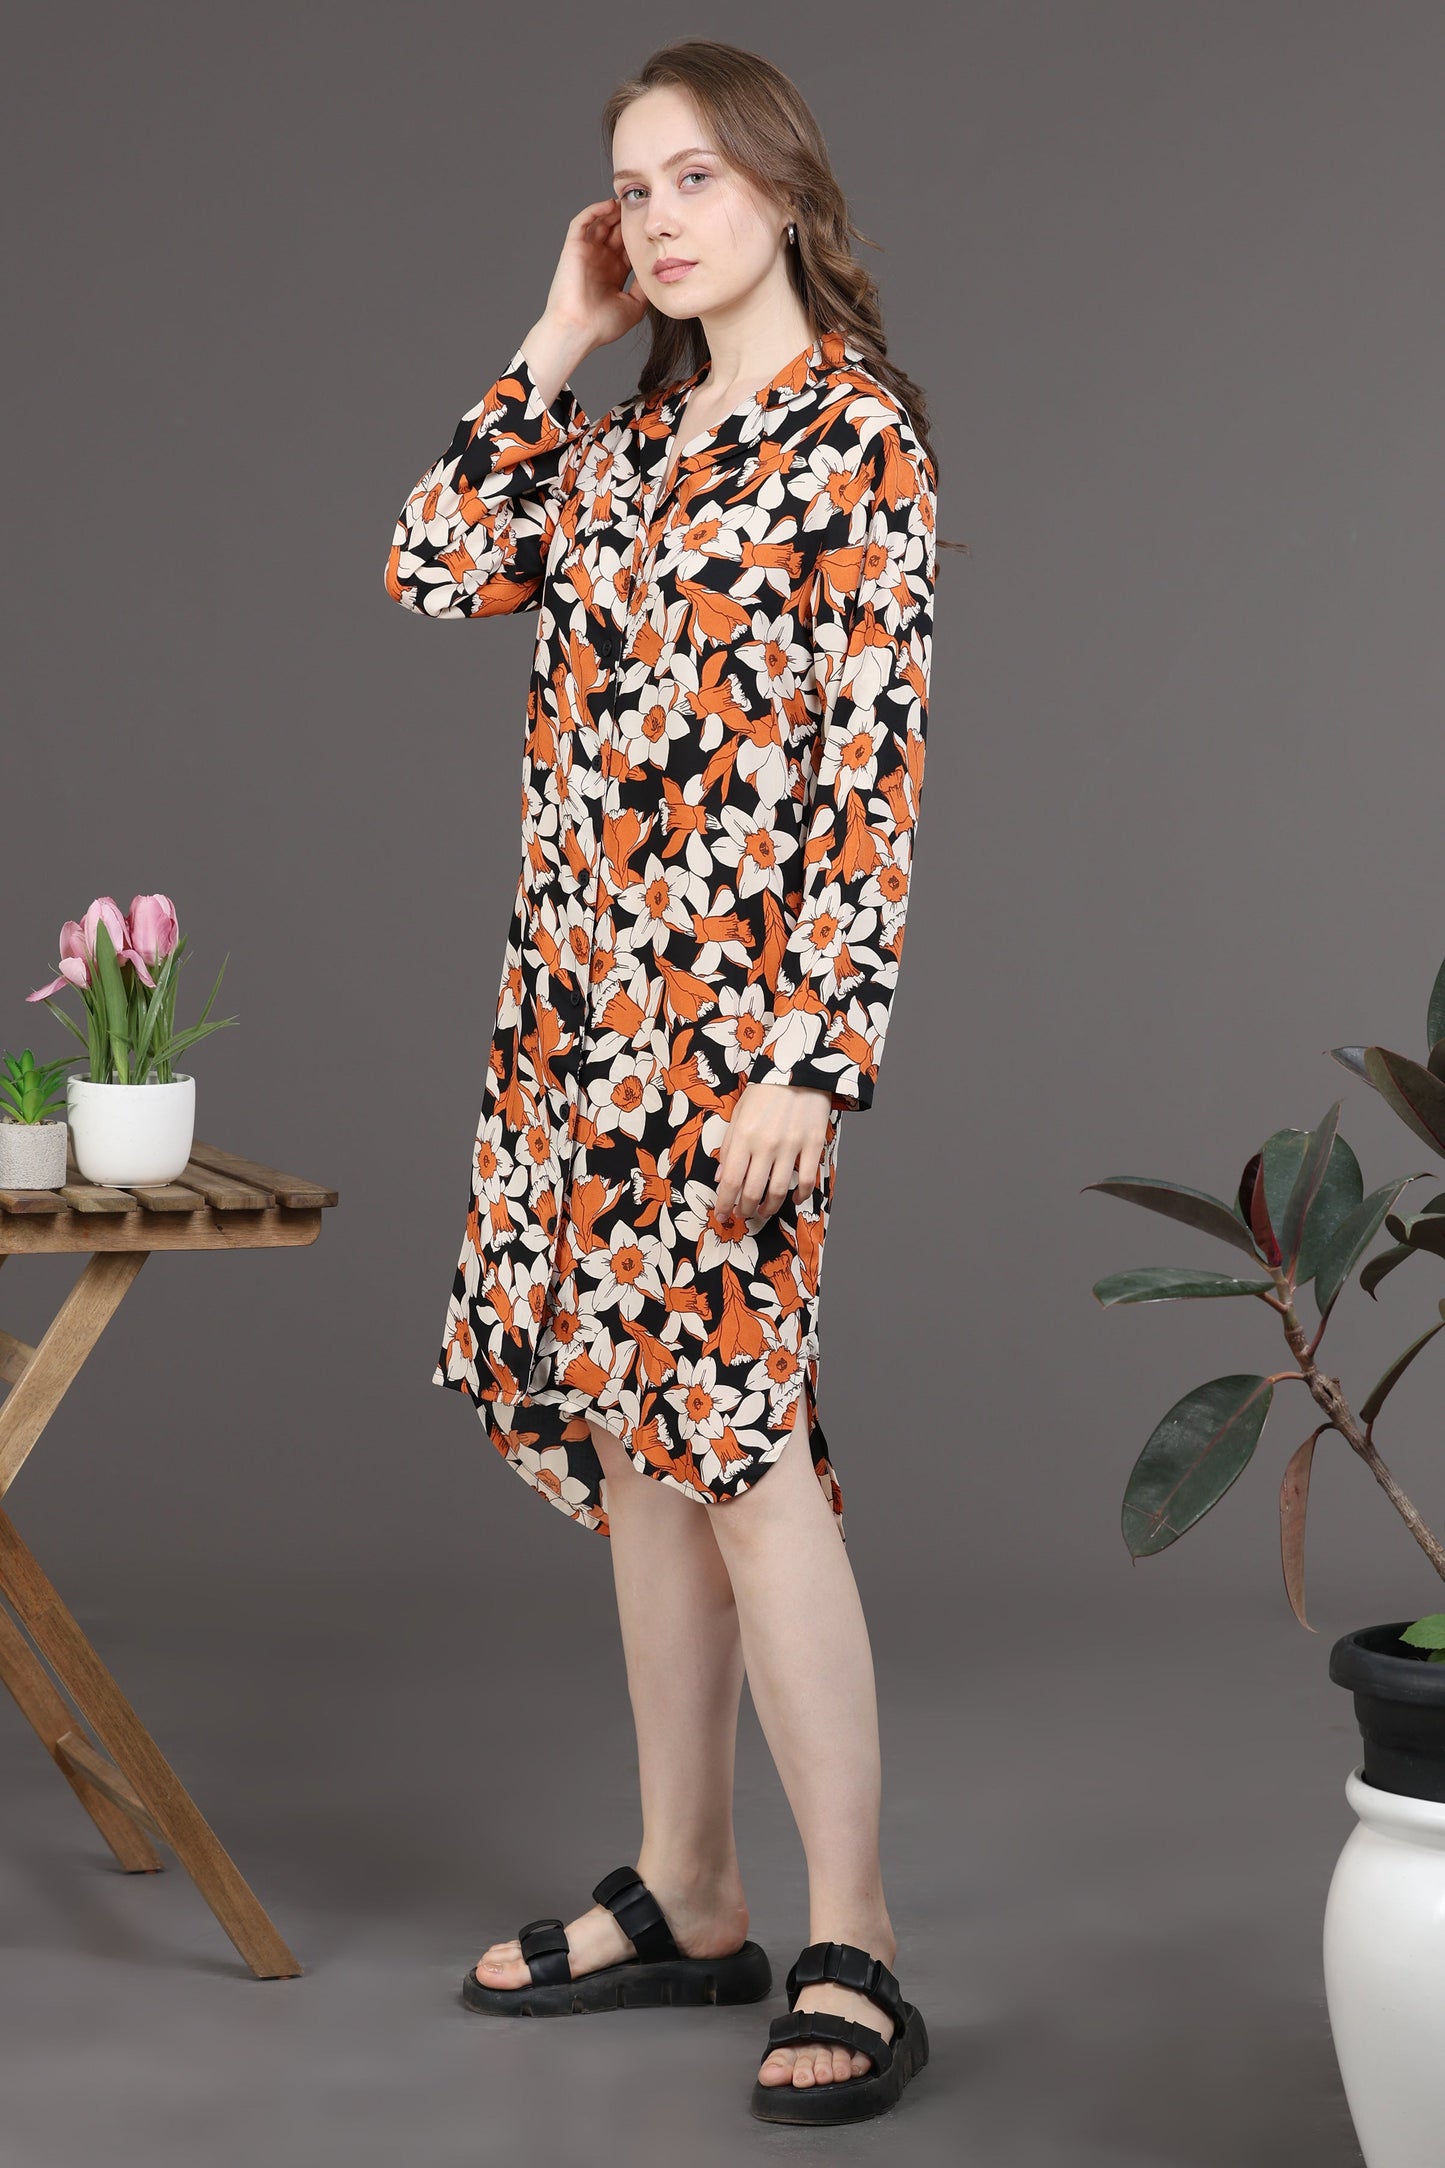 Elegant Floral Dress(Orange/black)